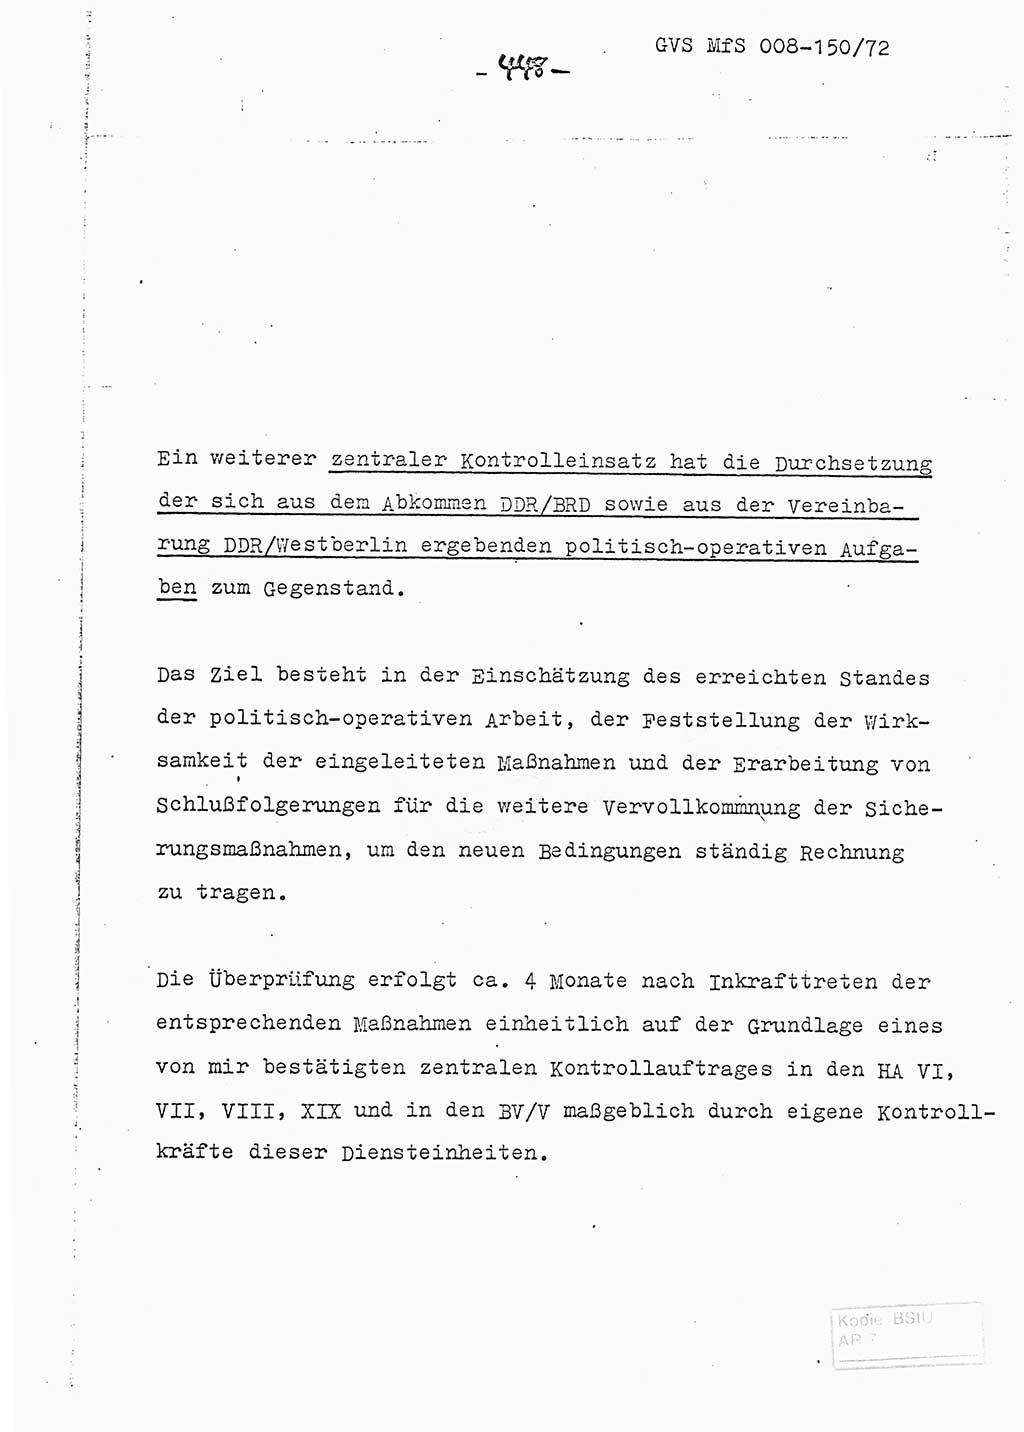 Referat (Entwurf) des Genossen Minister (Generaloberst Erich Mielke) auf der Dienstkonferenz 1972, Ministerium für Staatssicherheit (MfS) [Deutsche Demokratische Republik (DDR)], Der Minister, Geheime Verschlußsache (GVS) 008-150/72, Berlin 25.2.1972, Seite 448 (Ref. Entw. DK MfS DDR Min. GVS 008-150/72 1972, S. 448)